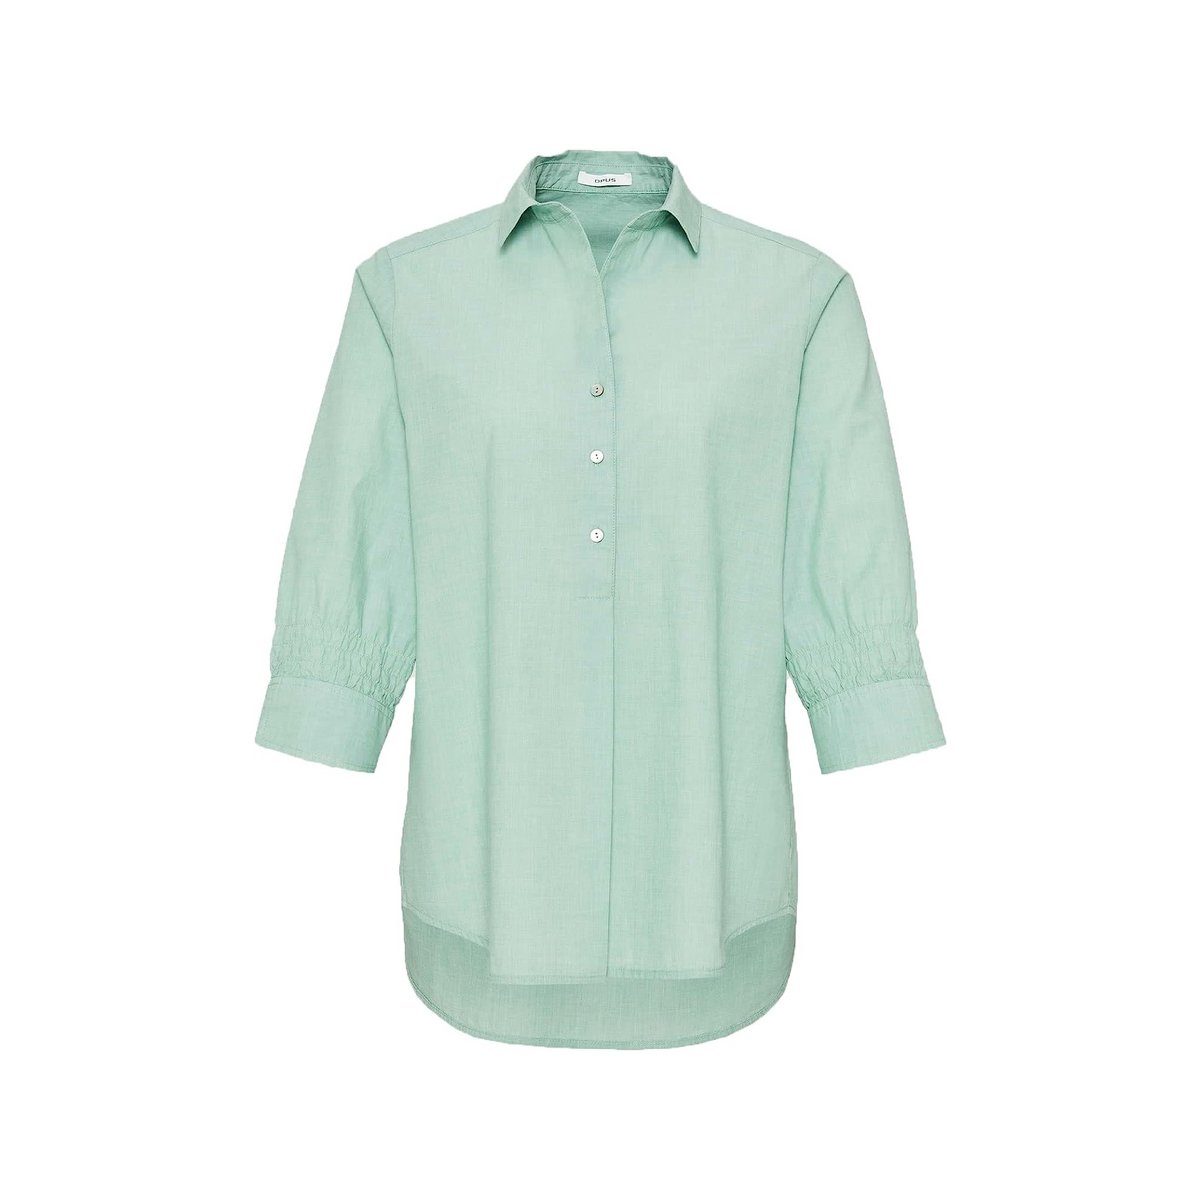 Grüne someday Blusen für Damen online kaufen | OTTO